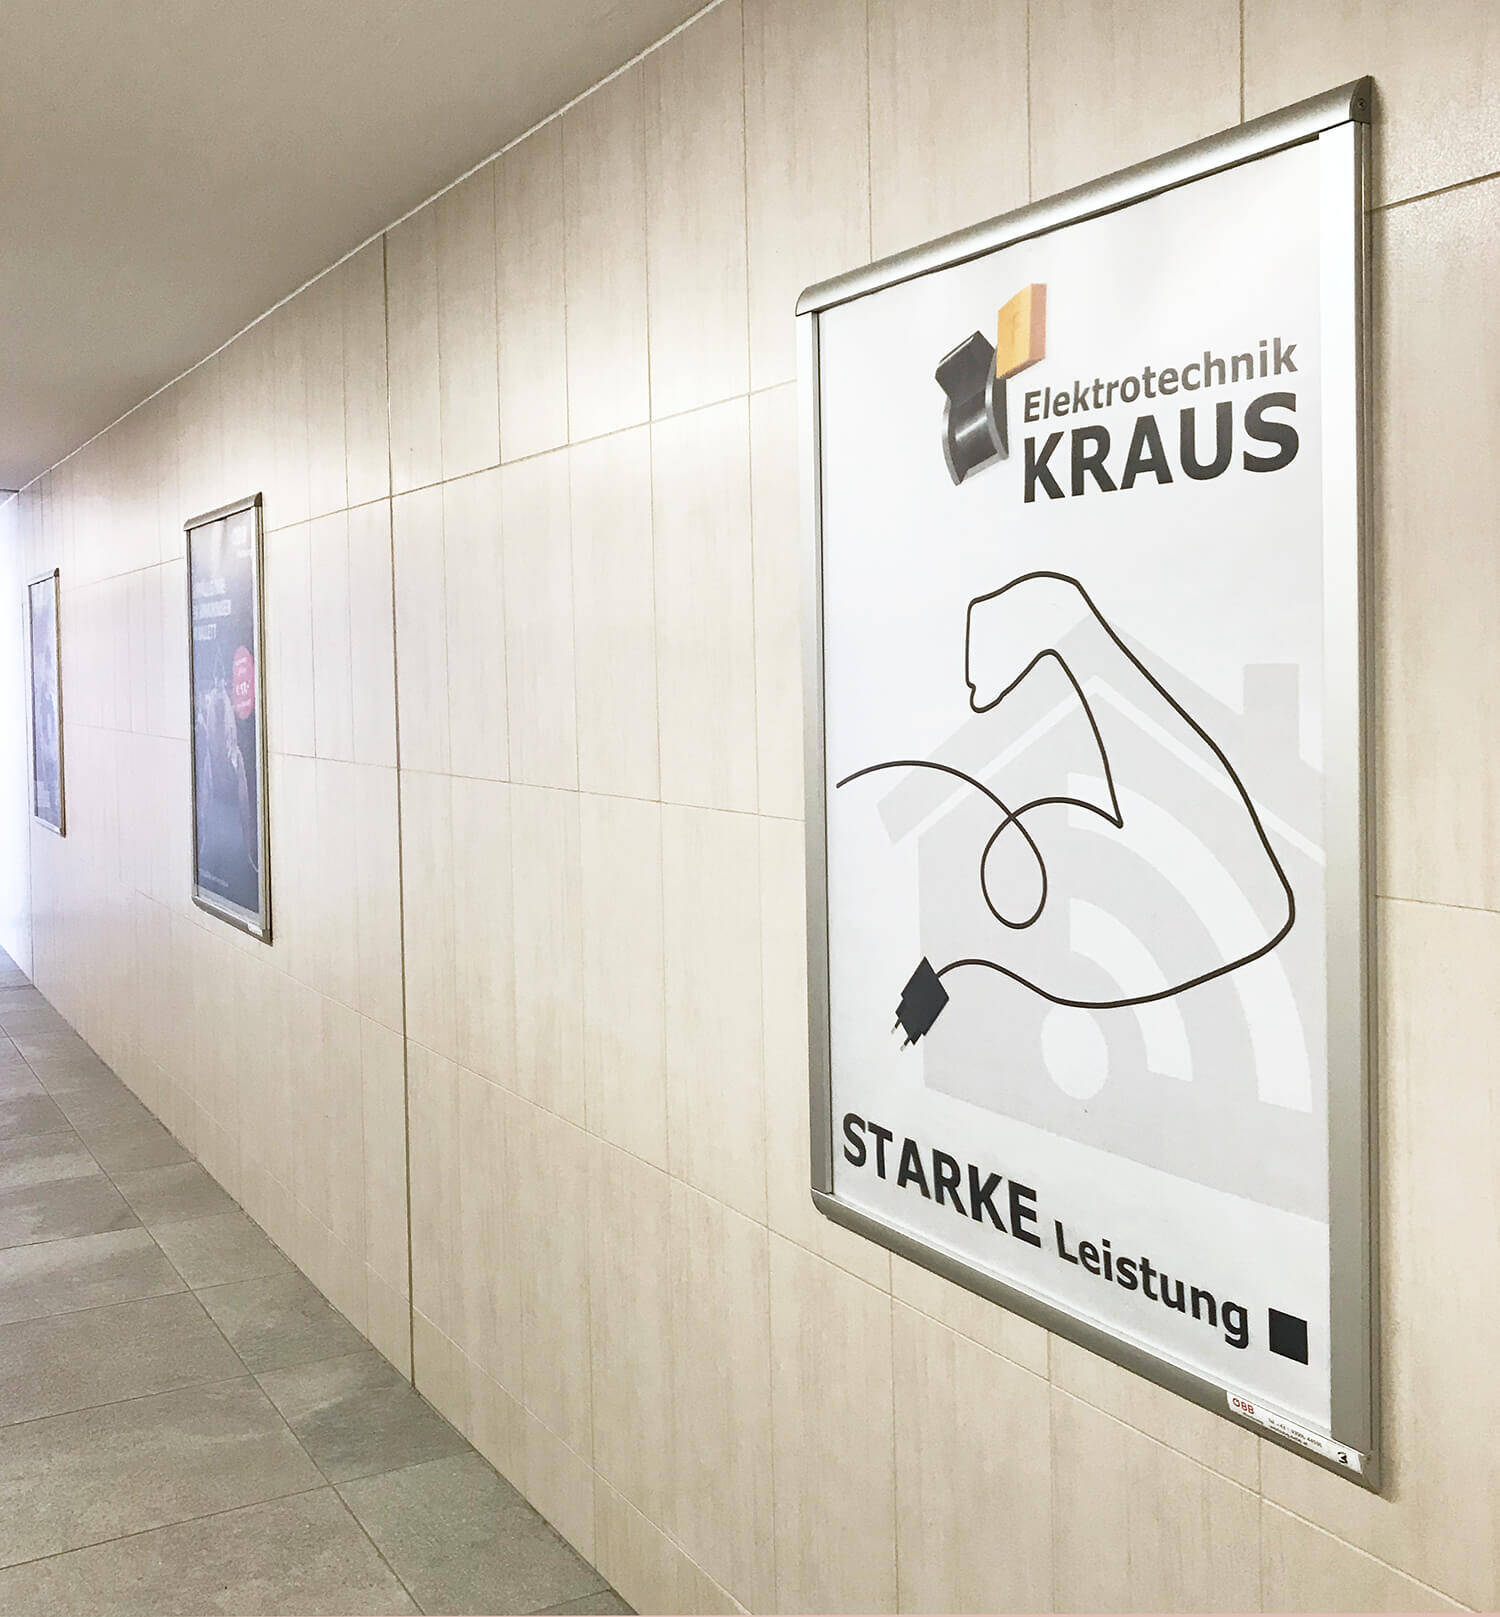 Plakat für Elektrotechnik Kraus